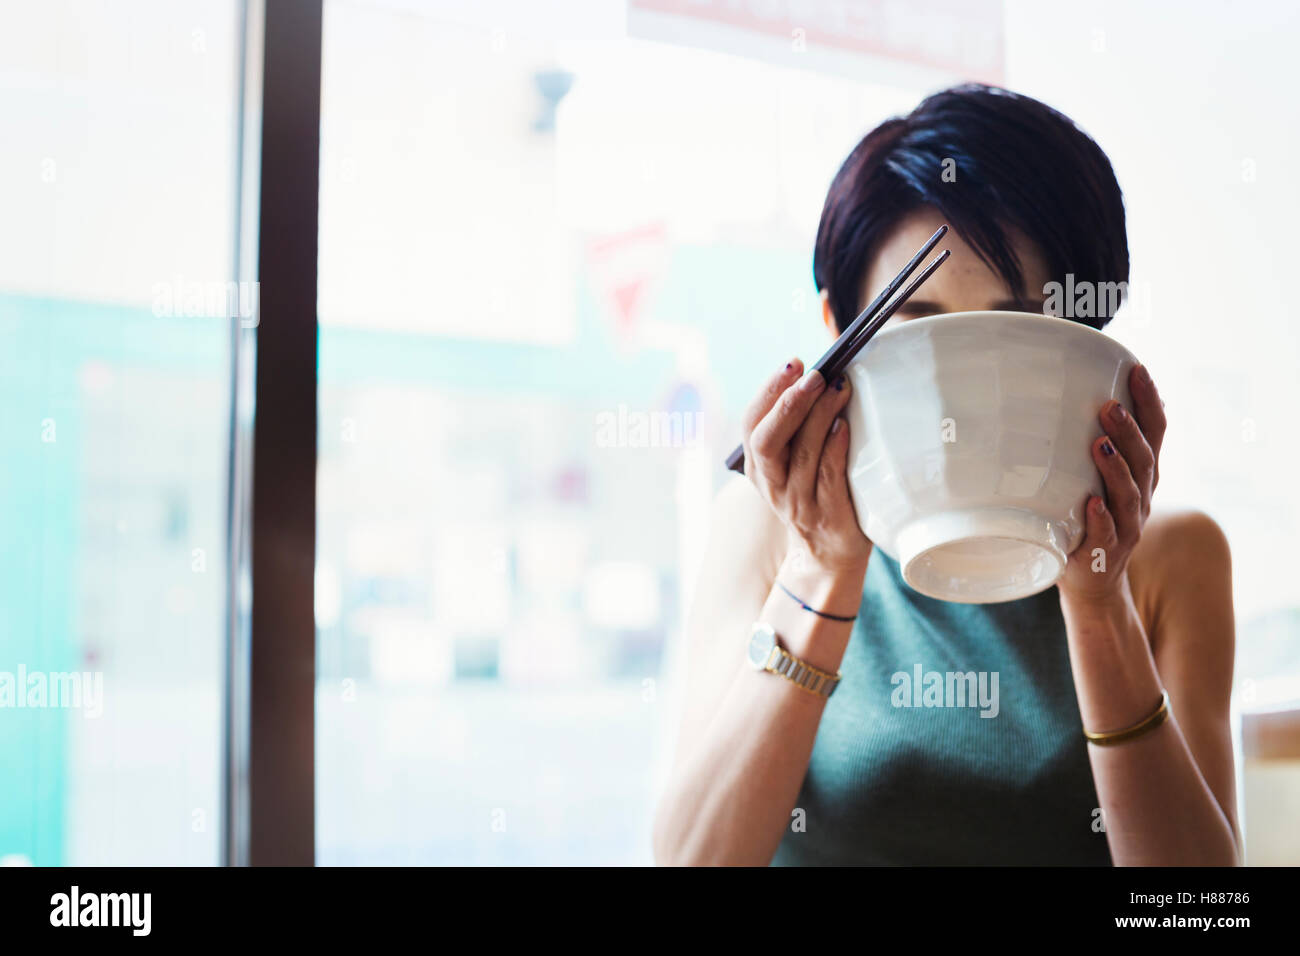 Ein Ramen-Nudel-Café in einer Stadt.  Eine Frau sitzen Essen Ramen-Nudel-Suppe, aus der Schüssel schlürfen. Stockfoto